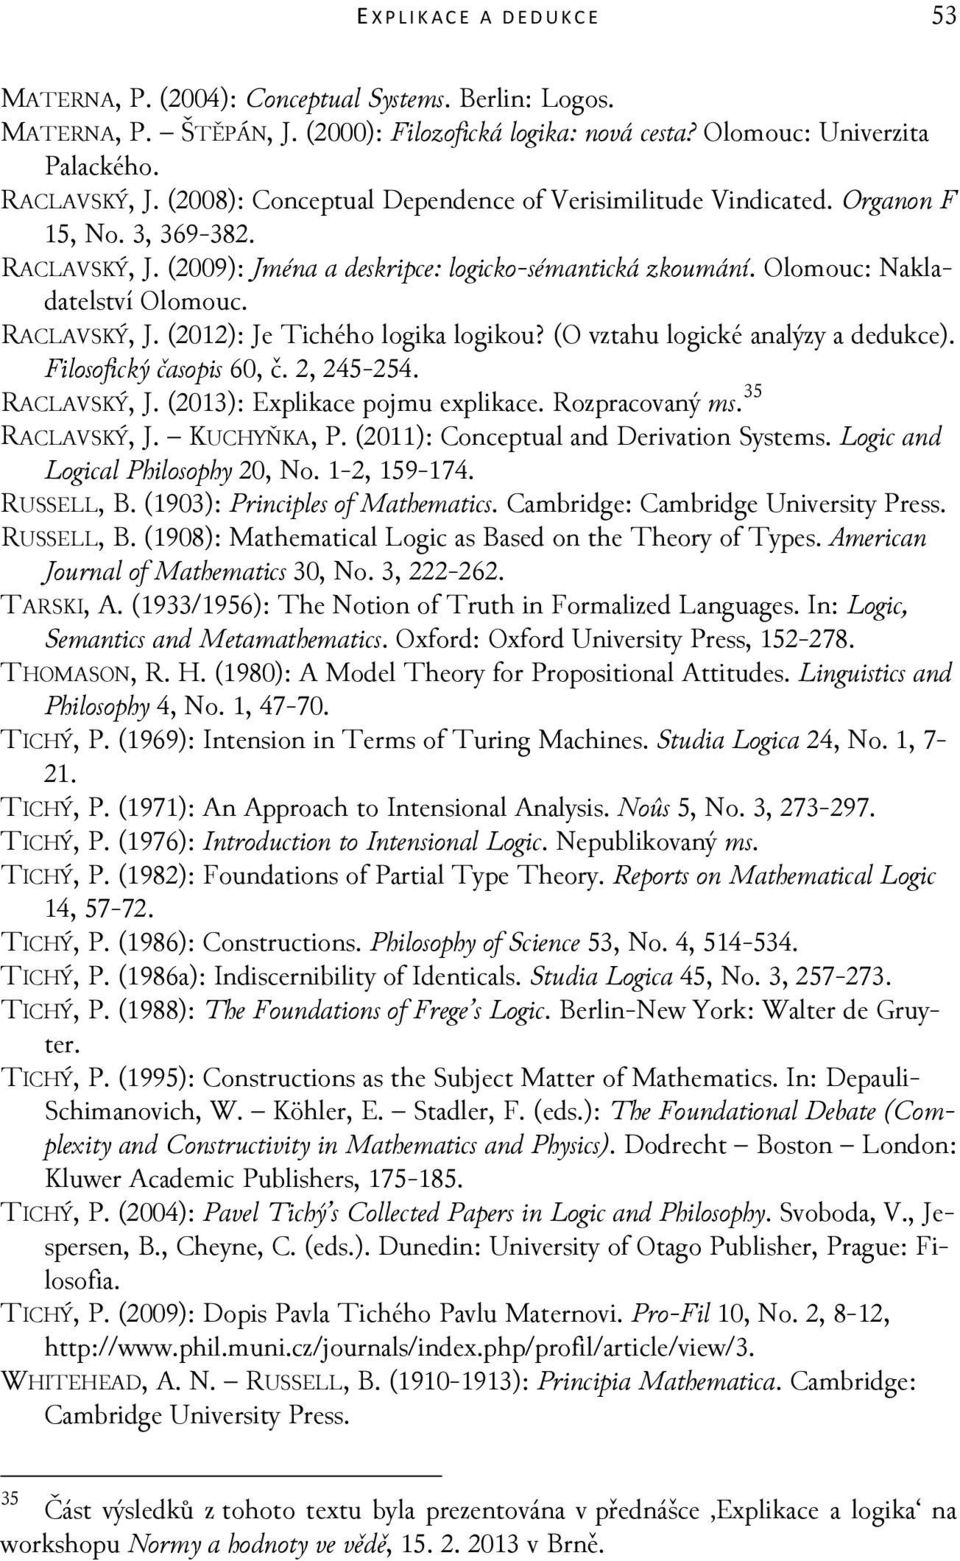 RACLAVSKÝ, J. (2012): Je Tichého logika logikou? (O vztahu logické analýzy a dedukce). Filosofický časopis 60, č. 2, 245-254. RACLAVSKÝ, J. (2013): Explikace pojmu explikace. Rozpracovaný ms.